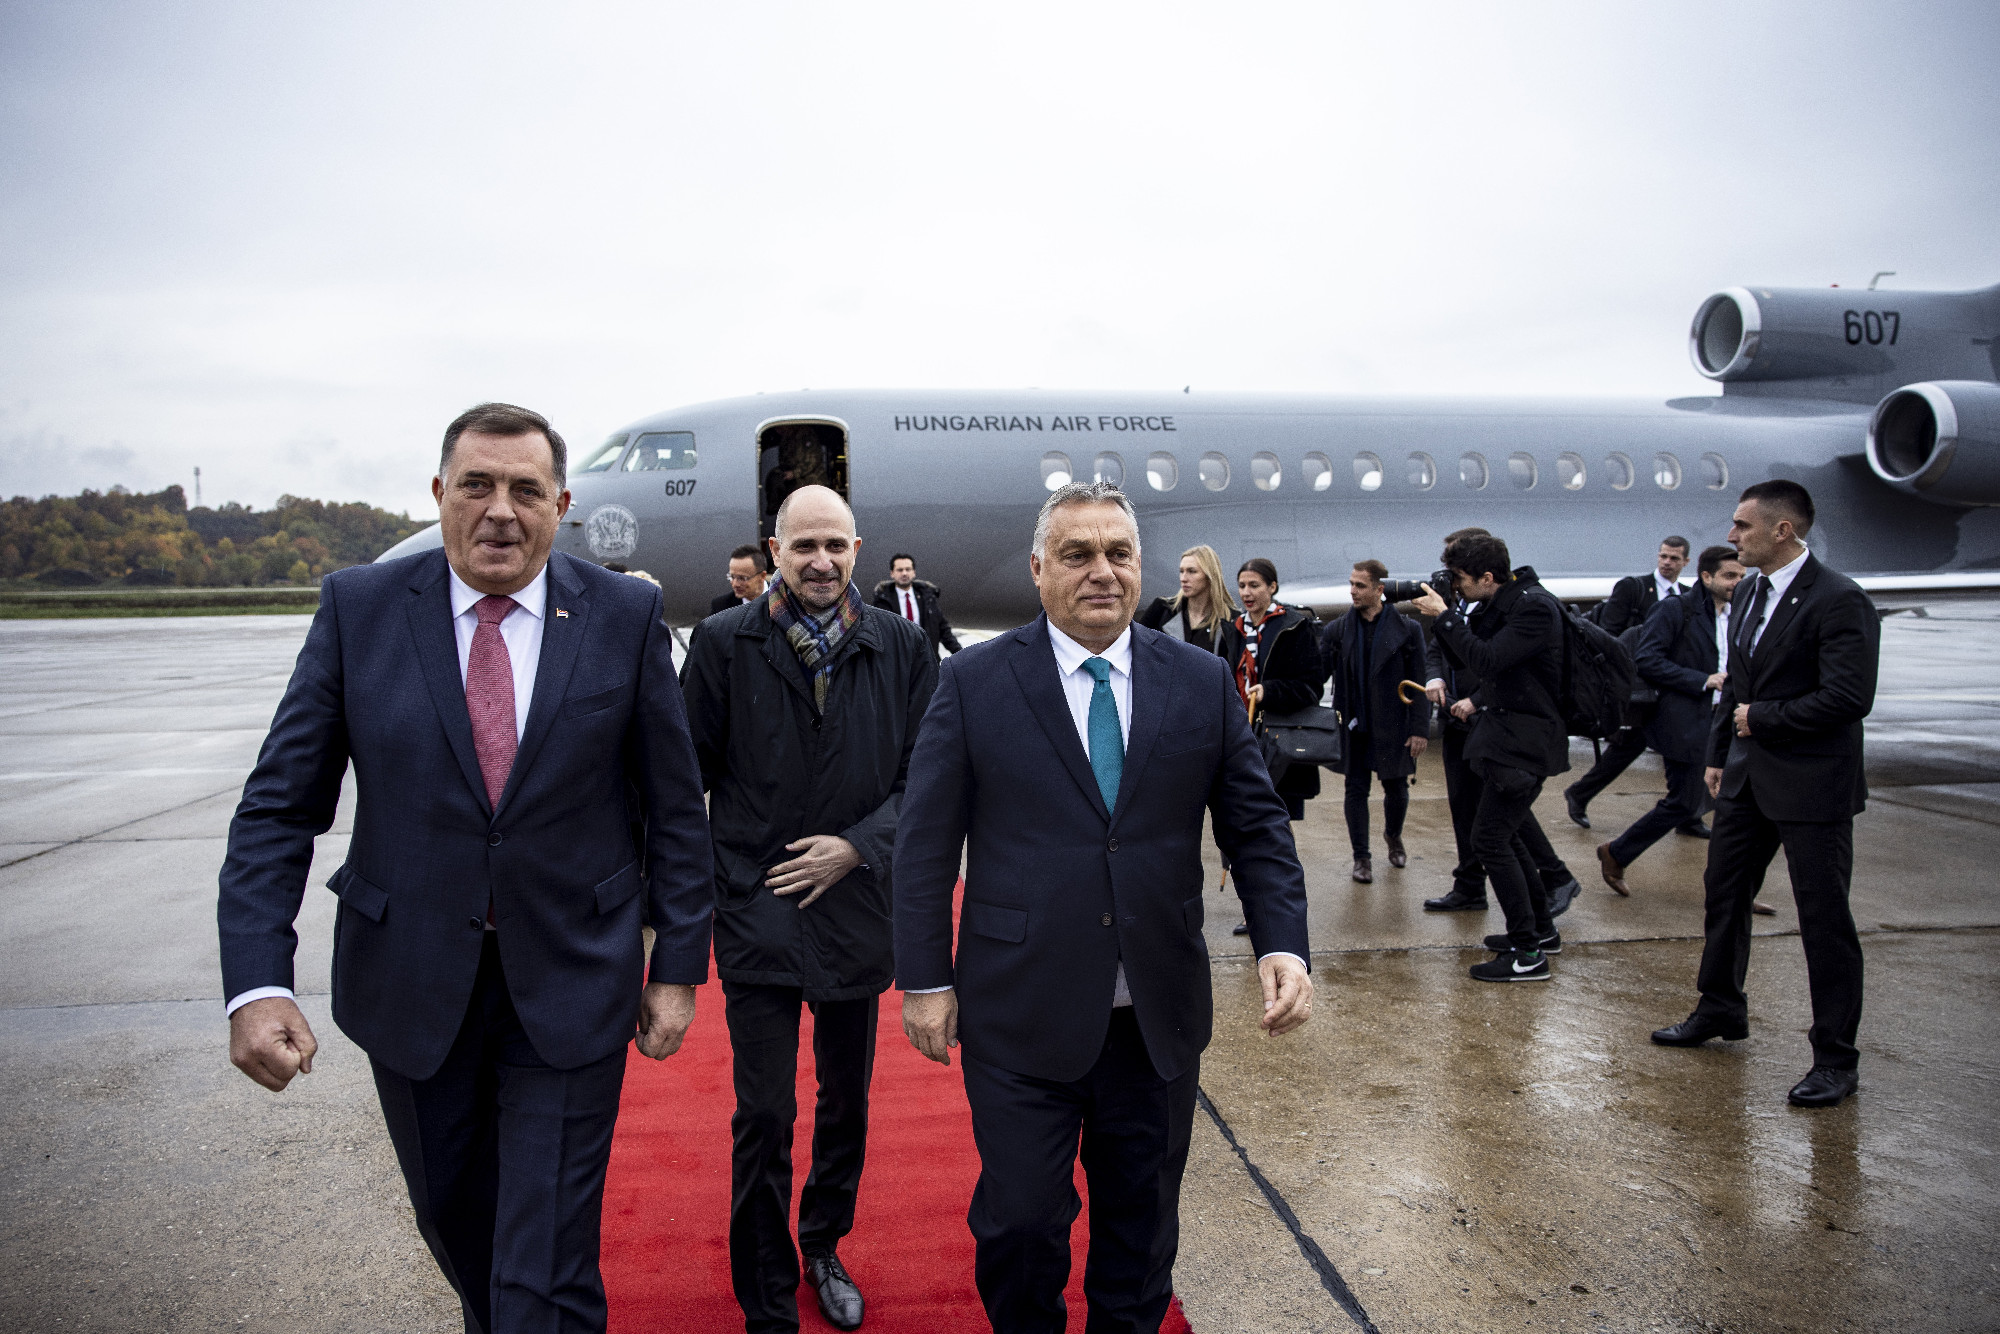 Persona non grata lesz Orbán Szarajevóban?